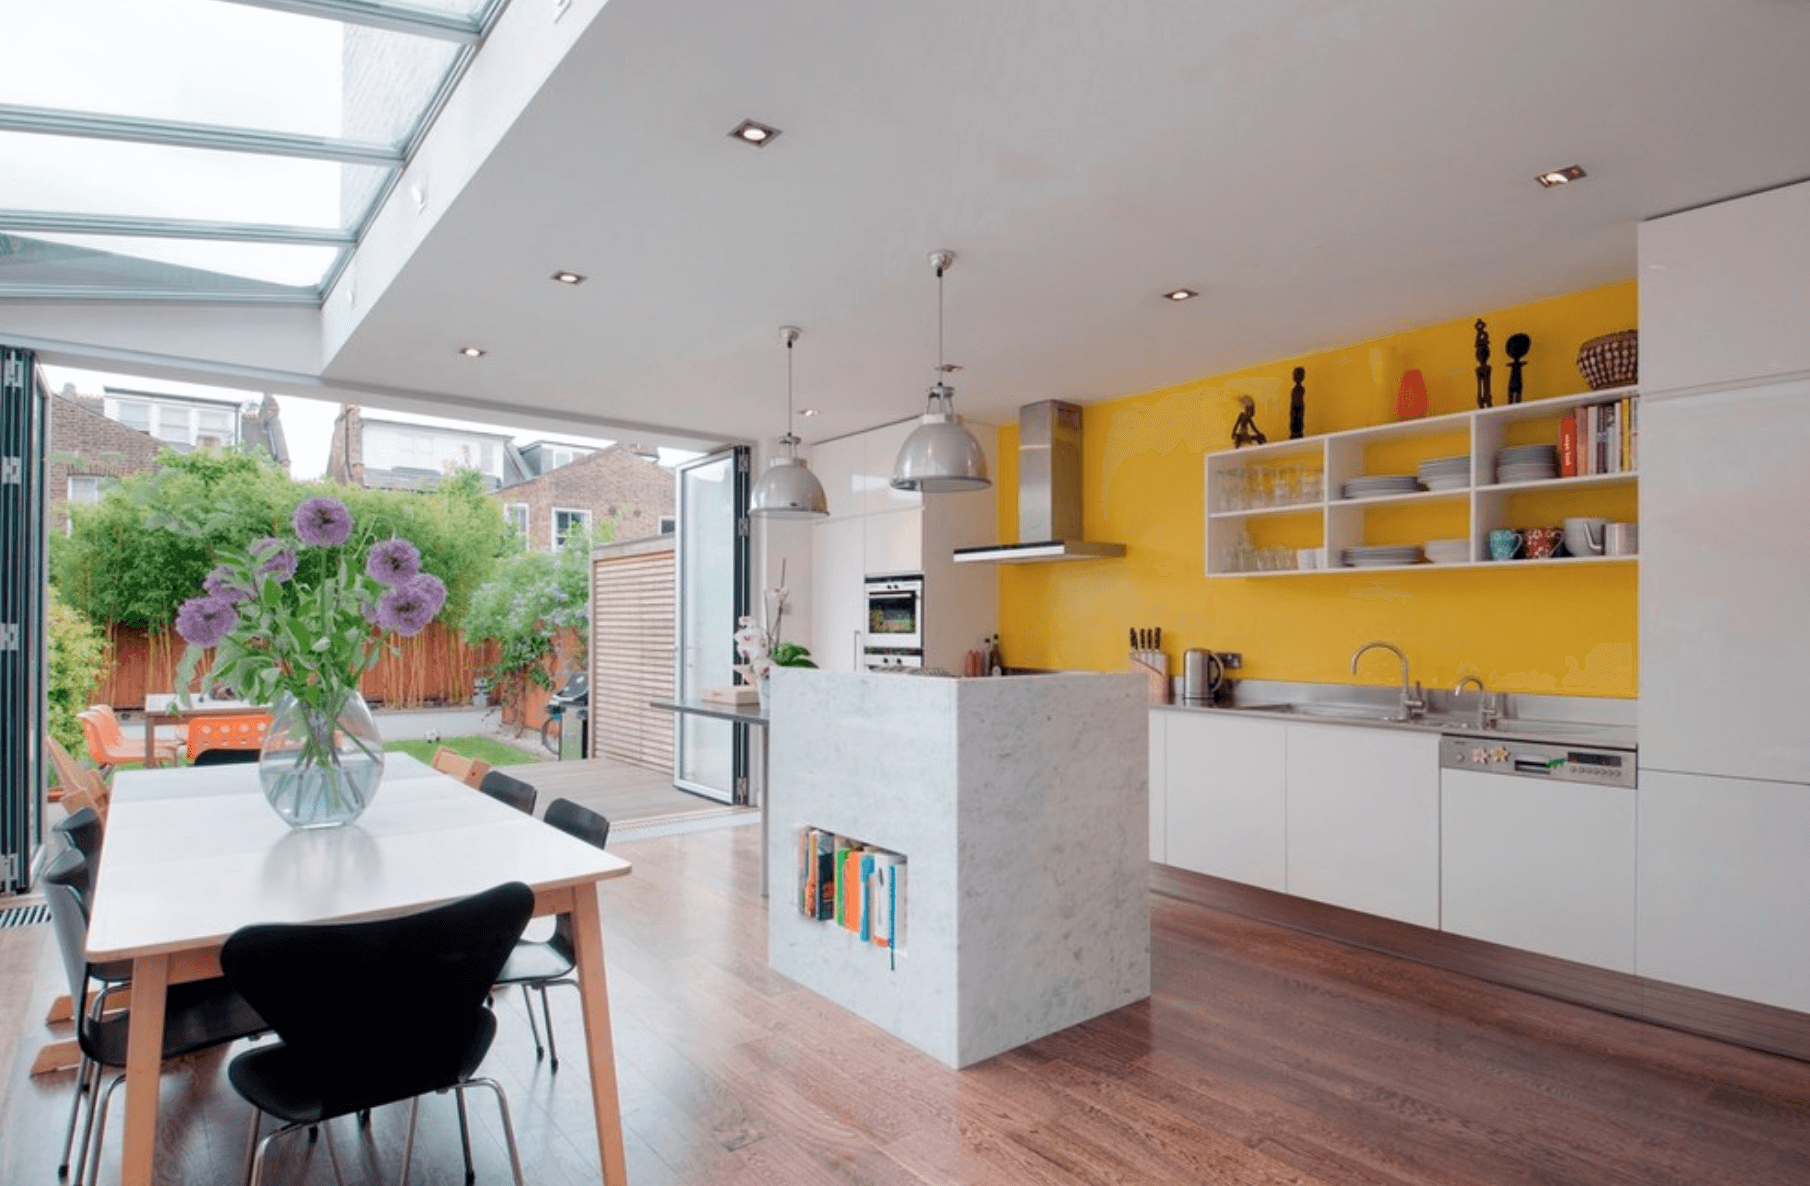  ۲۹ ایده رنگی خلاقانه آشپزخانه برای جلوه دادن به فضا